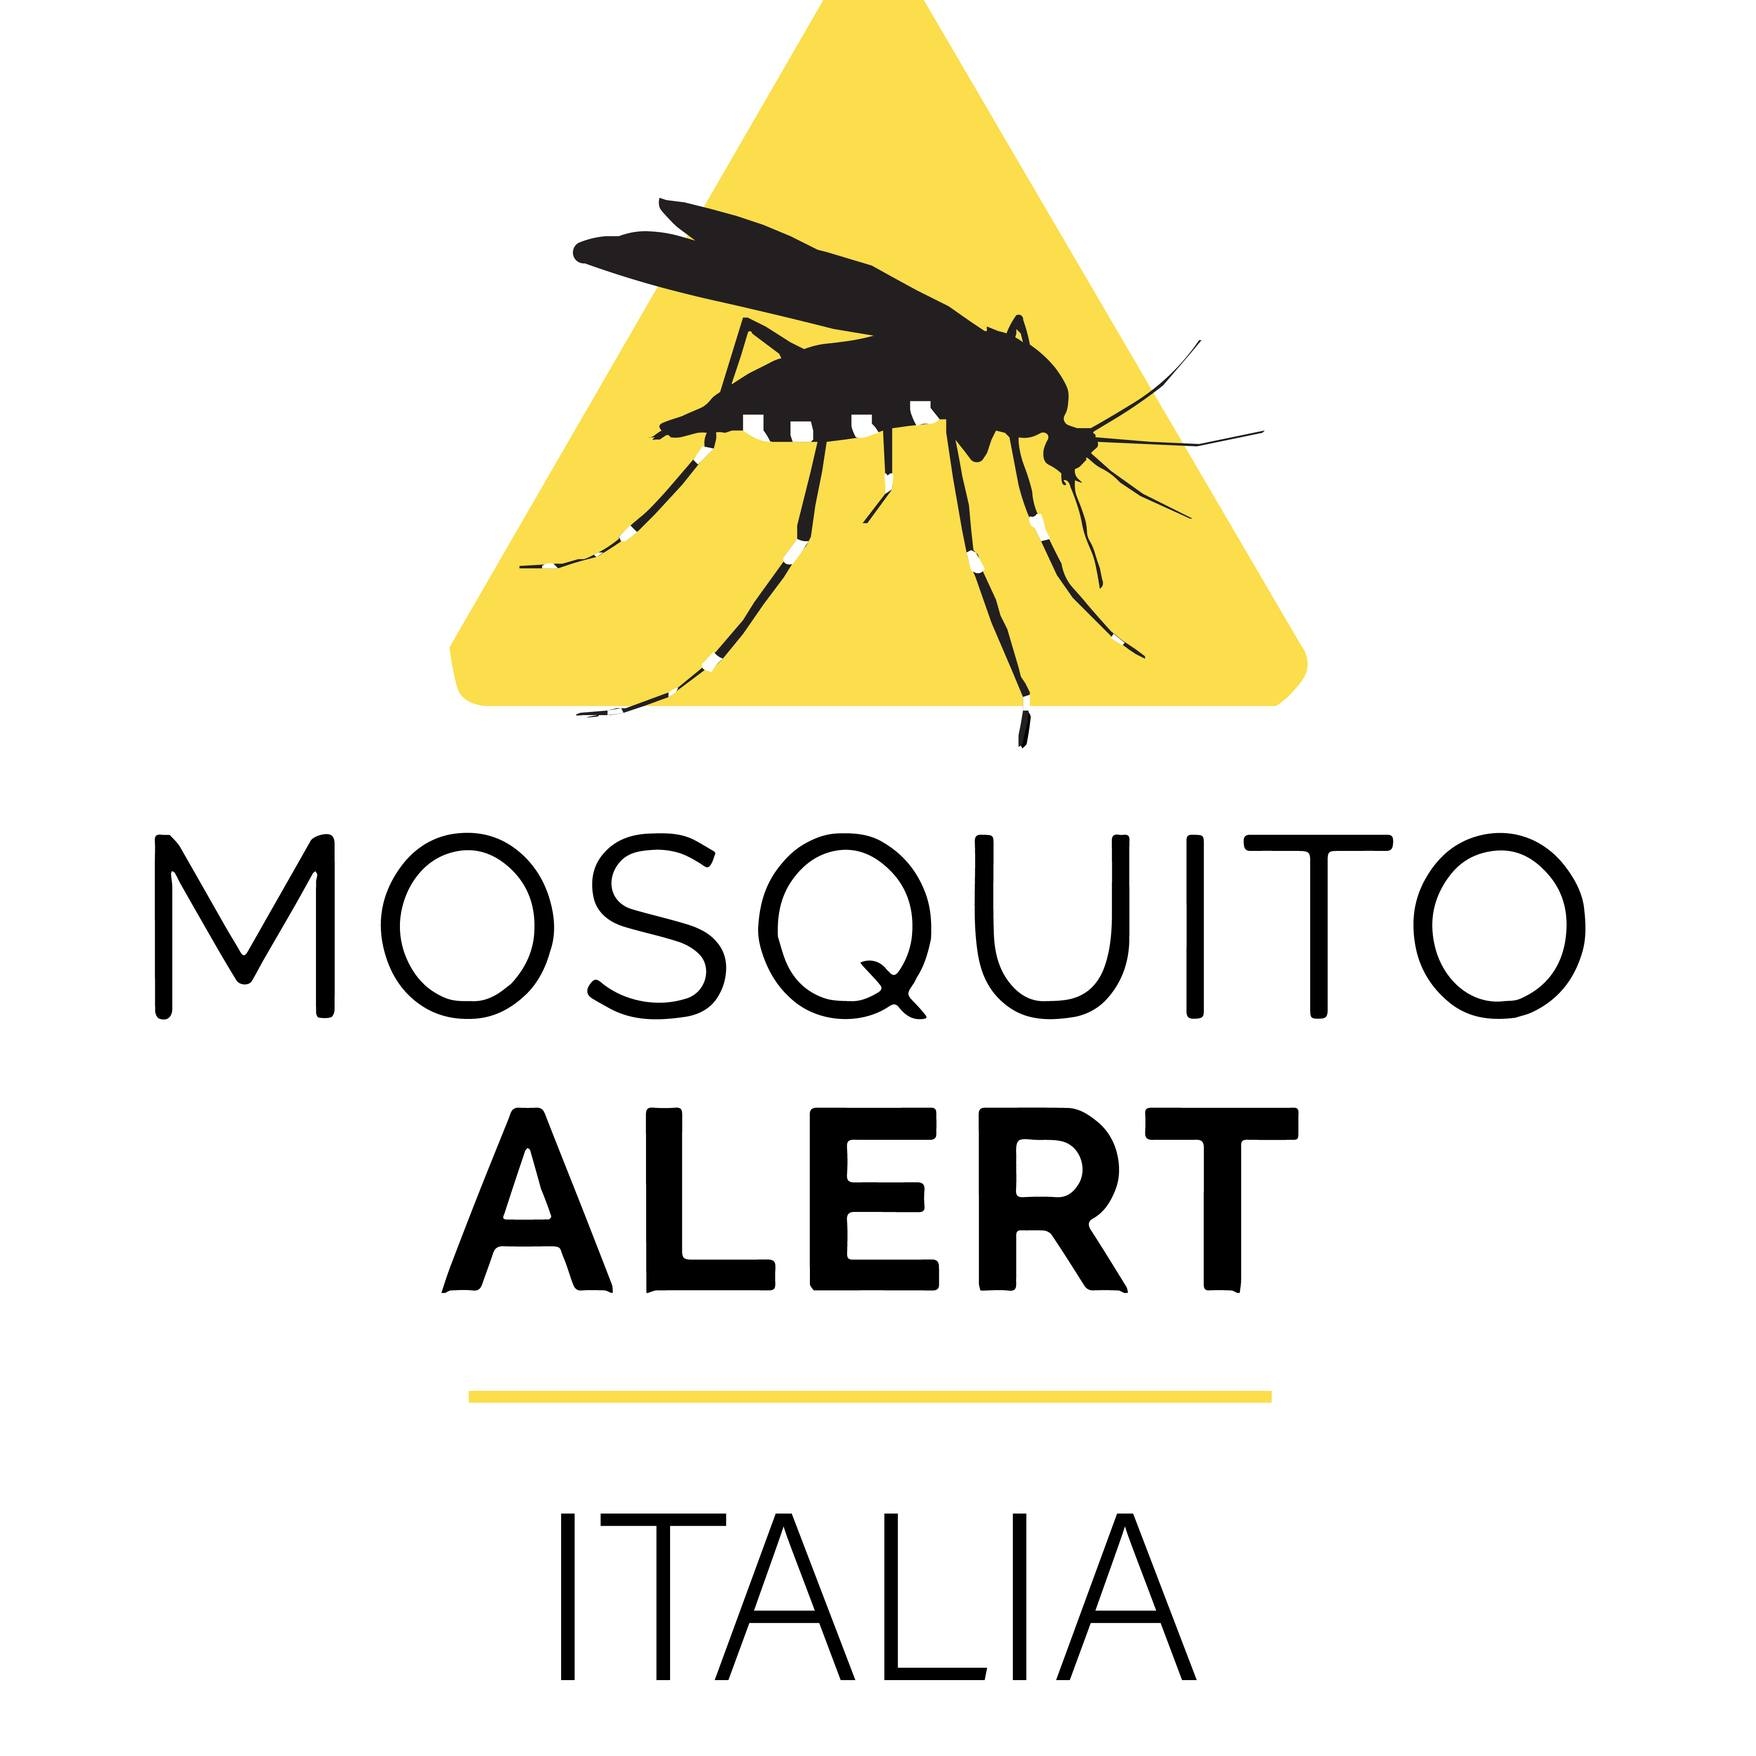 Zanzare che trasmettono virus: tracciarle è importante. Con l’app Mosquito Alert, i cittadini aiutano i ricercatori